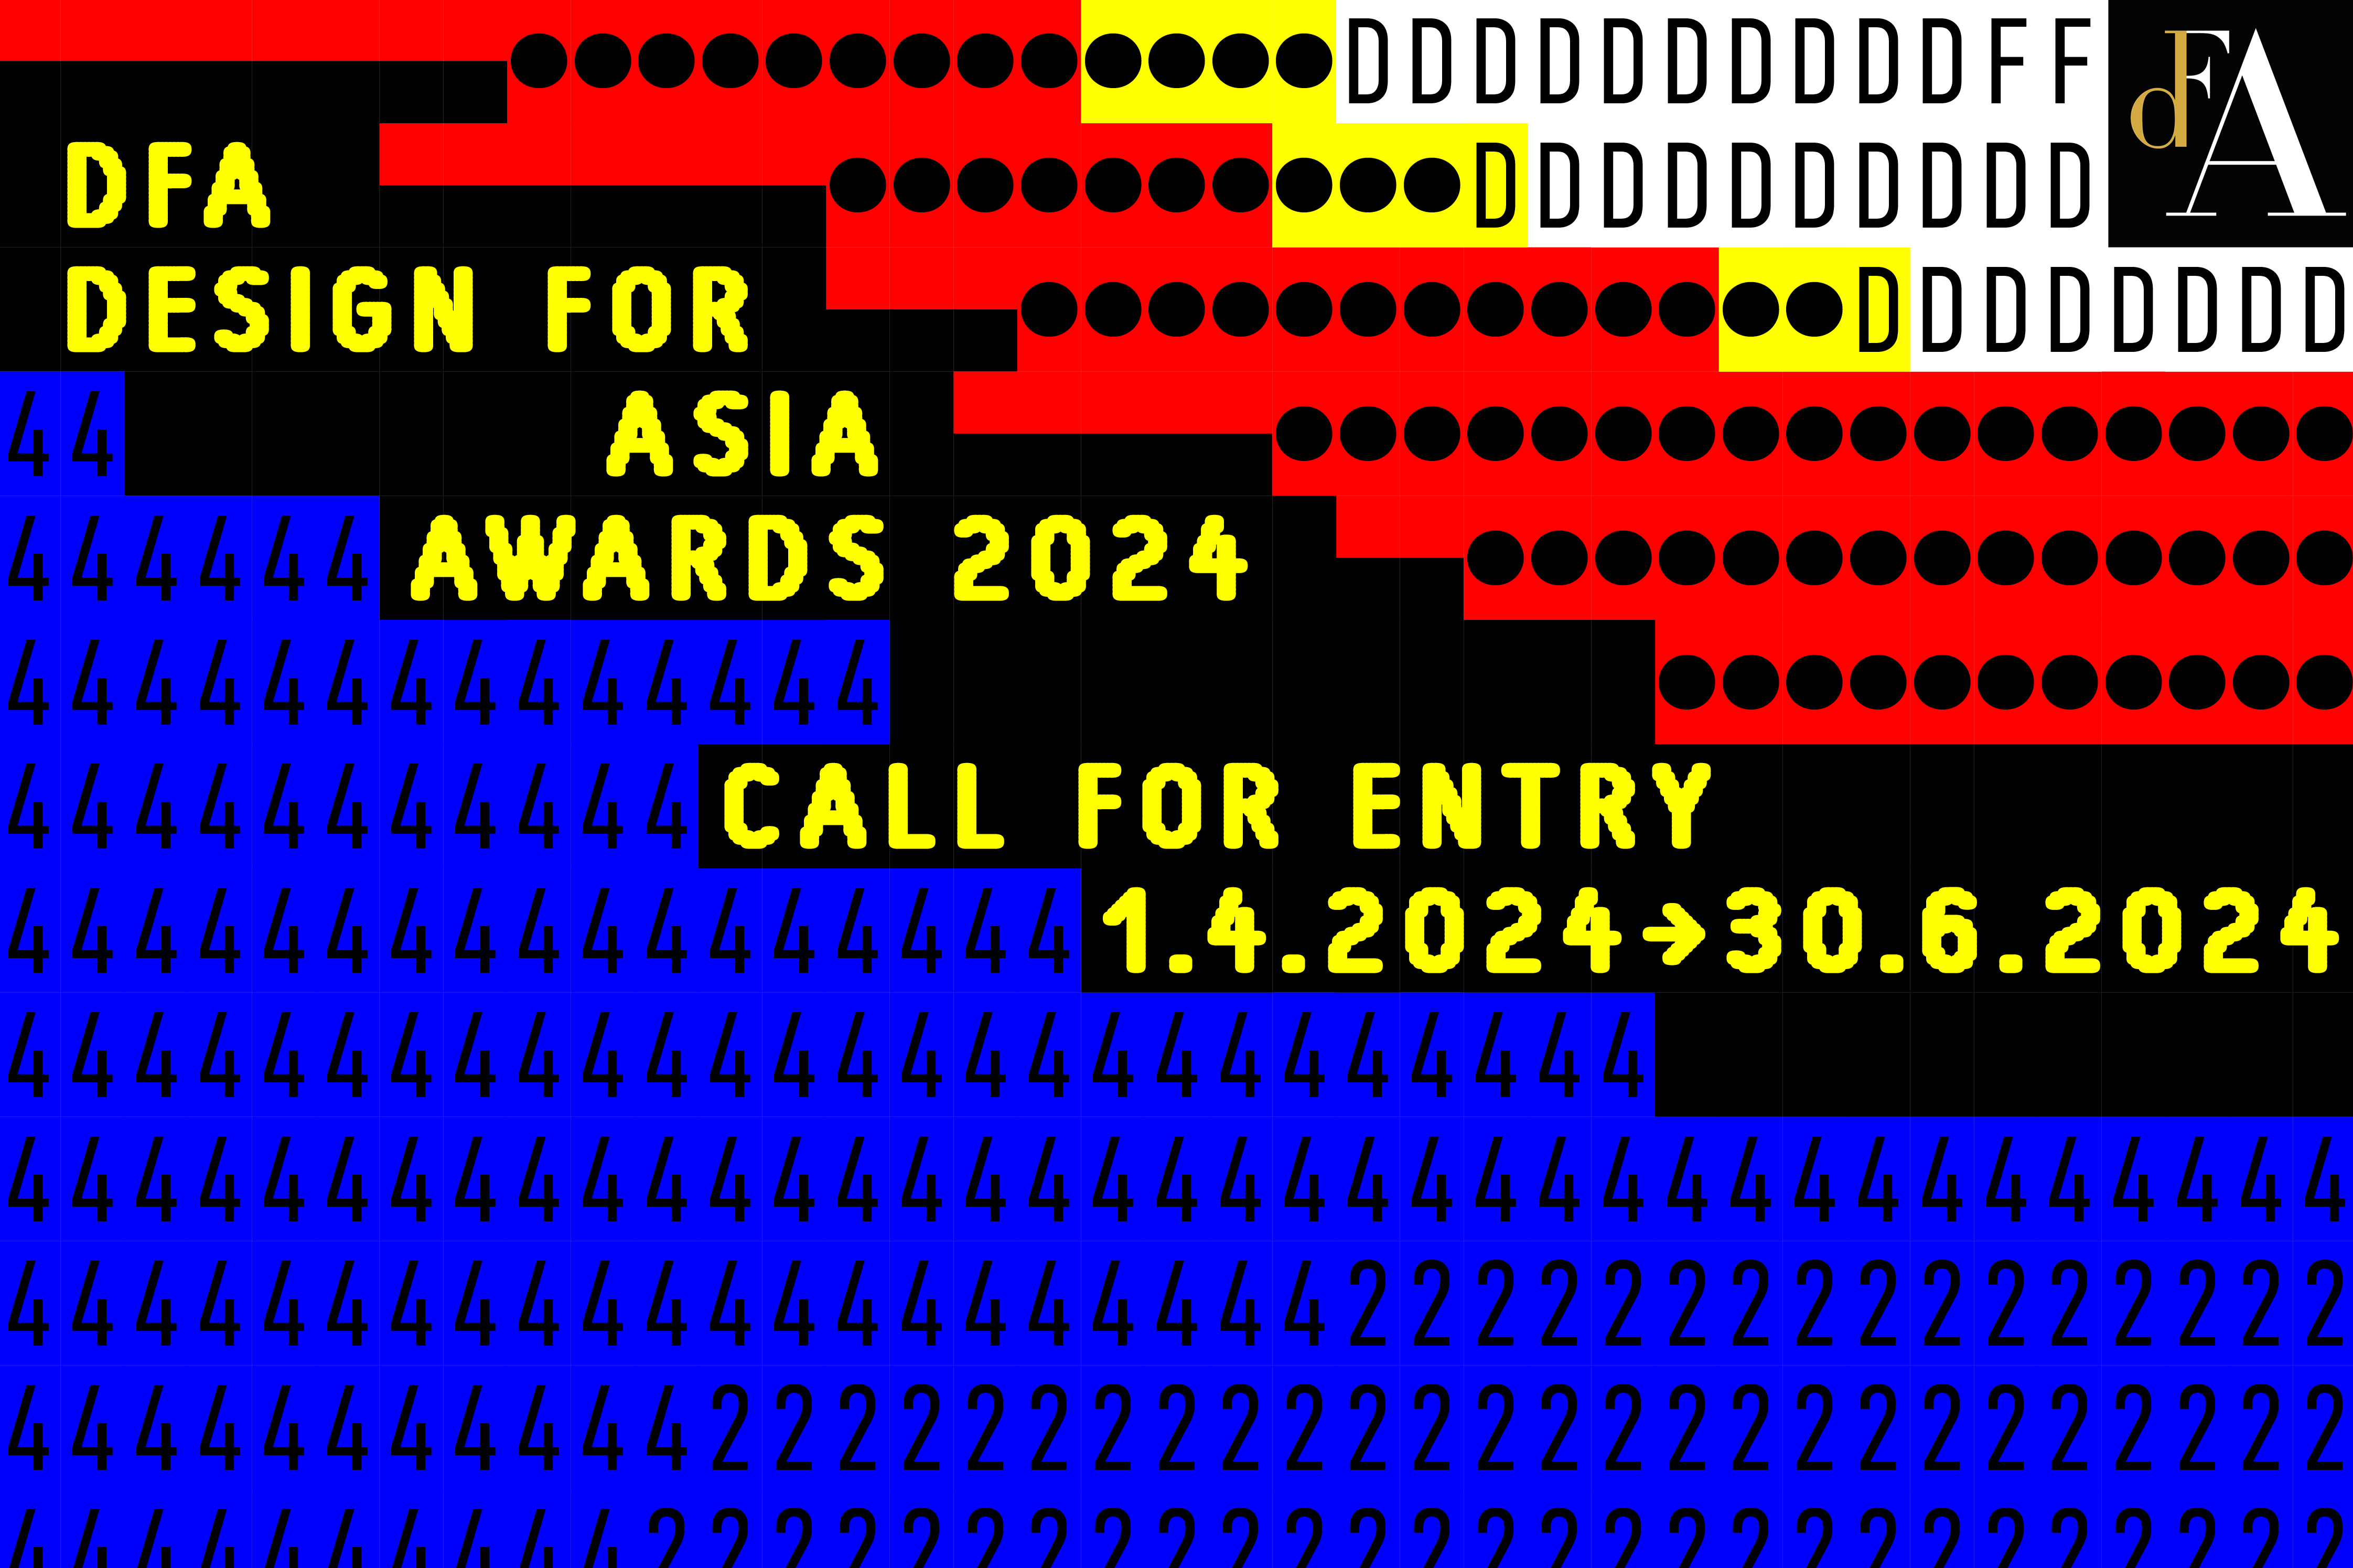 DFA Design for Asia Awards 2024 | Call For Entry